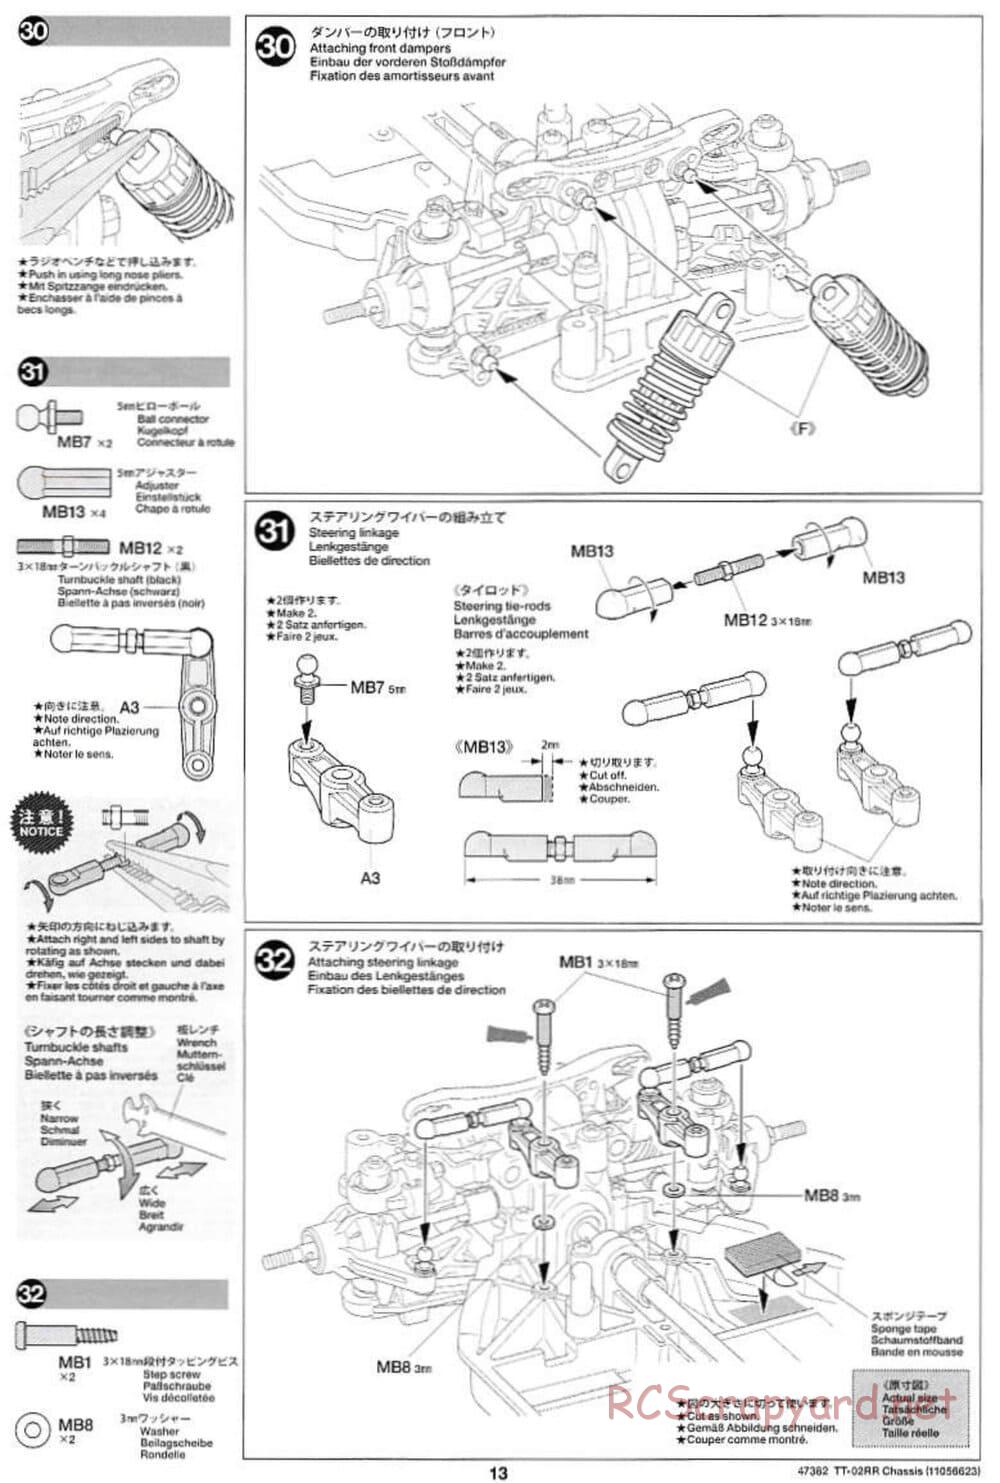 Tamiya - TT-02RR Chassis - Manual - Page 13